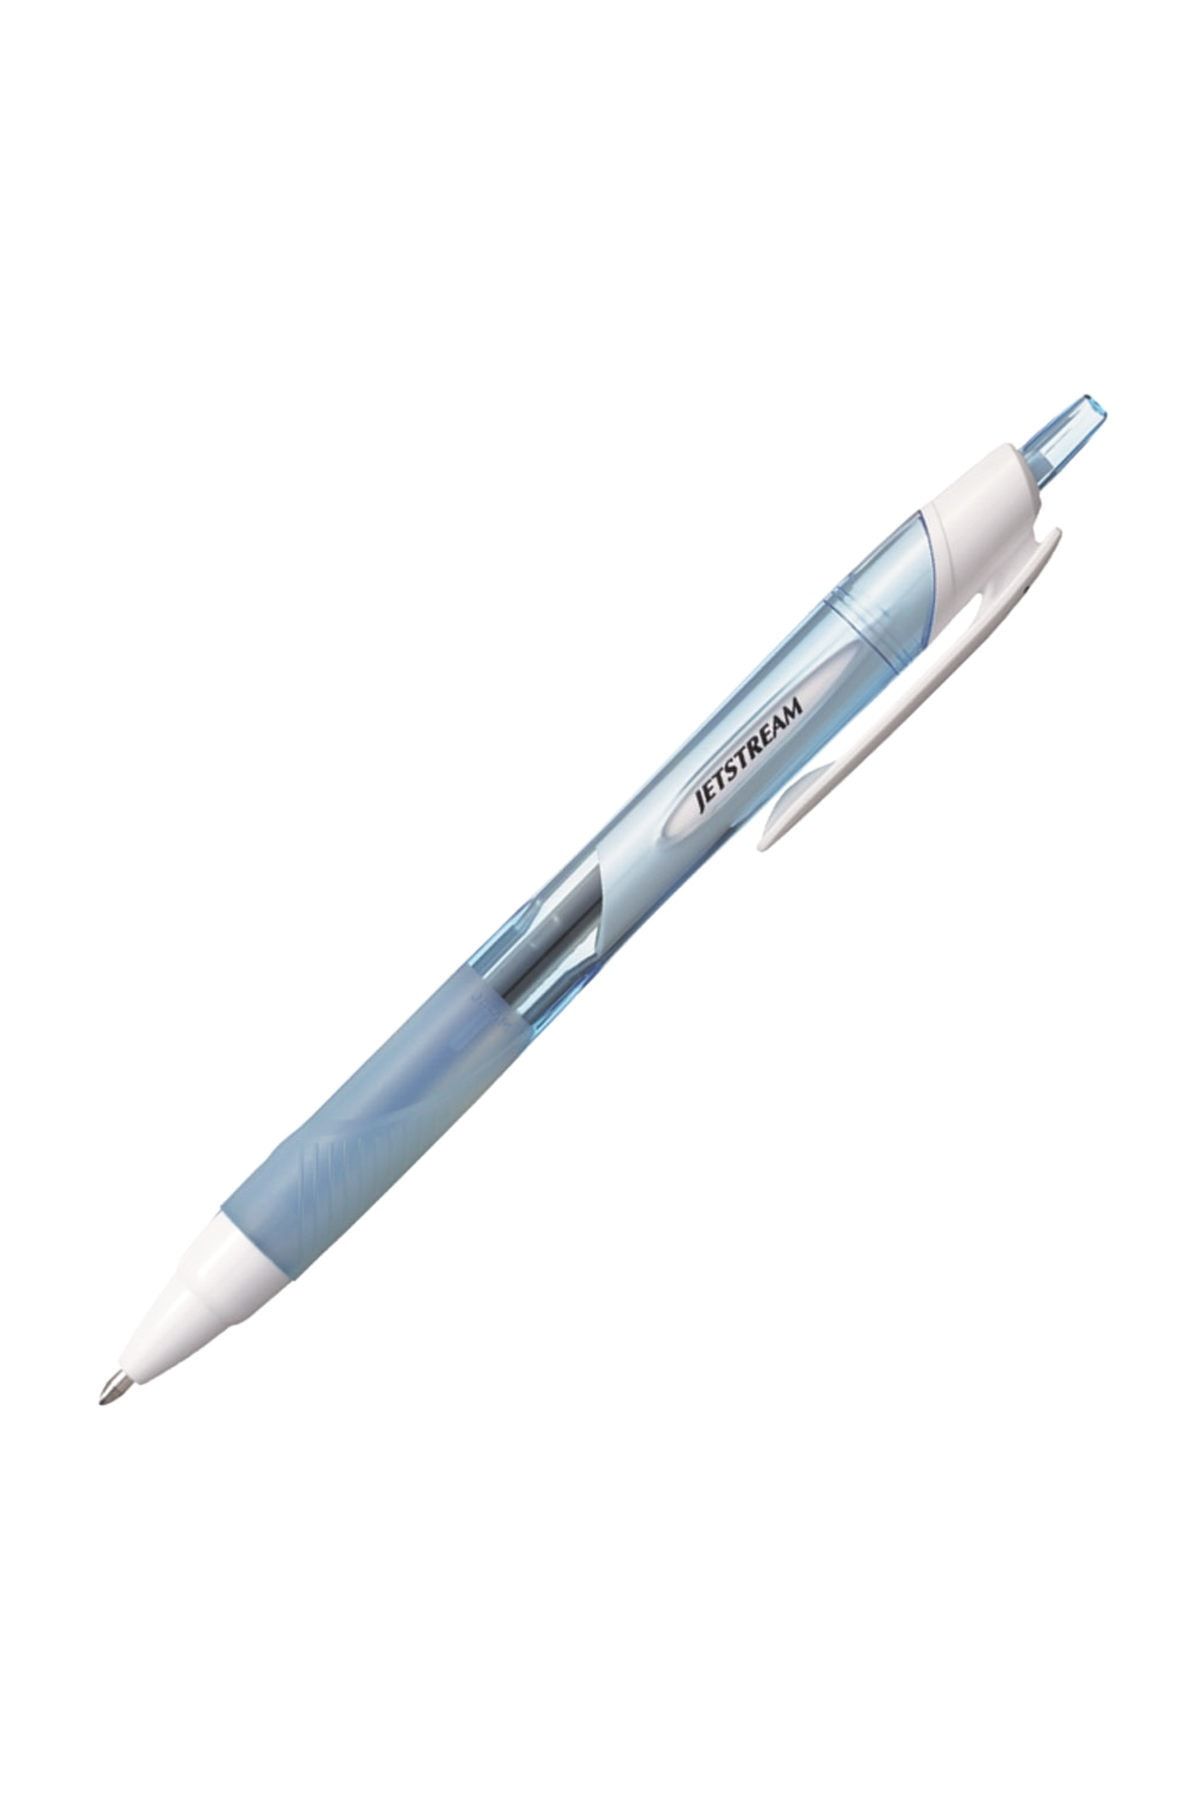 Ручки uni ball. Ручка Schneider "k15" шариковая автоматическая белая. Uni Jetstream SXN-157s. Ручка шариковая Uni Ball Jetstream 101(0.7mm/Blue). Ручка шариковая Uni Ball Jetstream (1.0mm/Black).